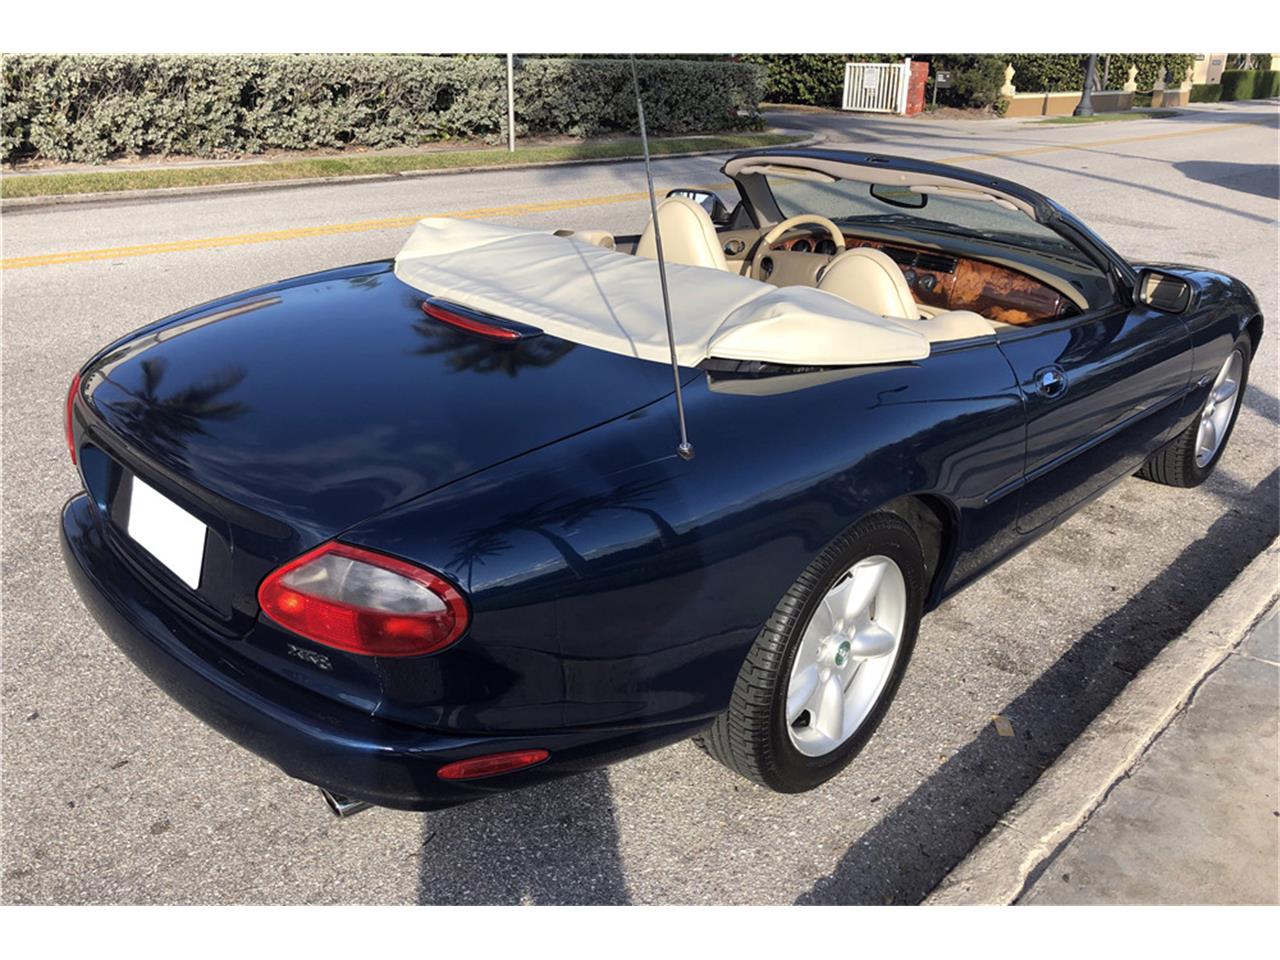 For Sale at Auction: 1997 Jaguar XK8 for sale in West Palm Beach, FL